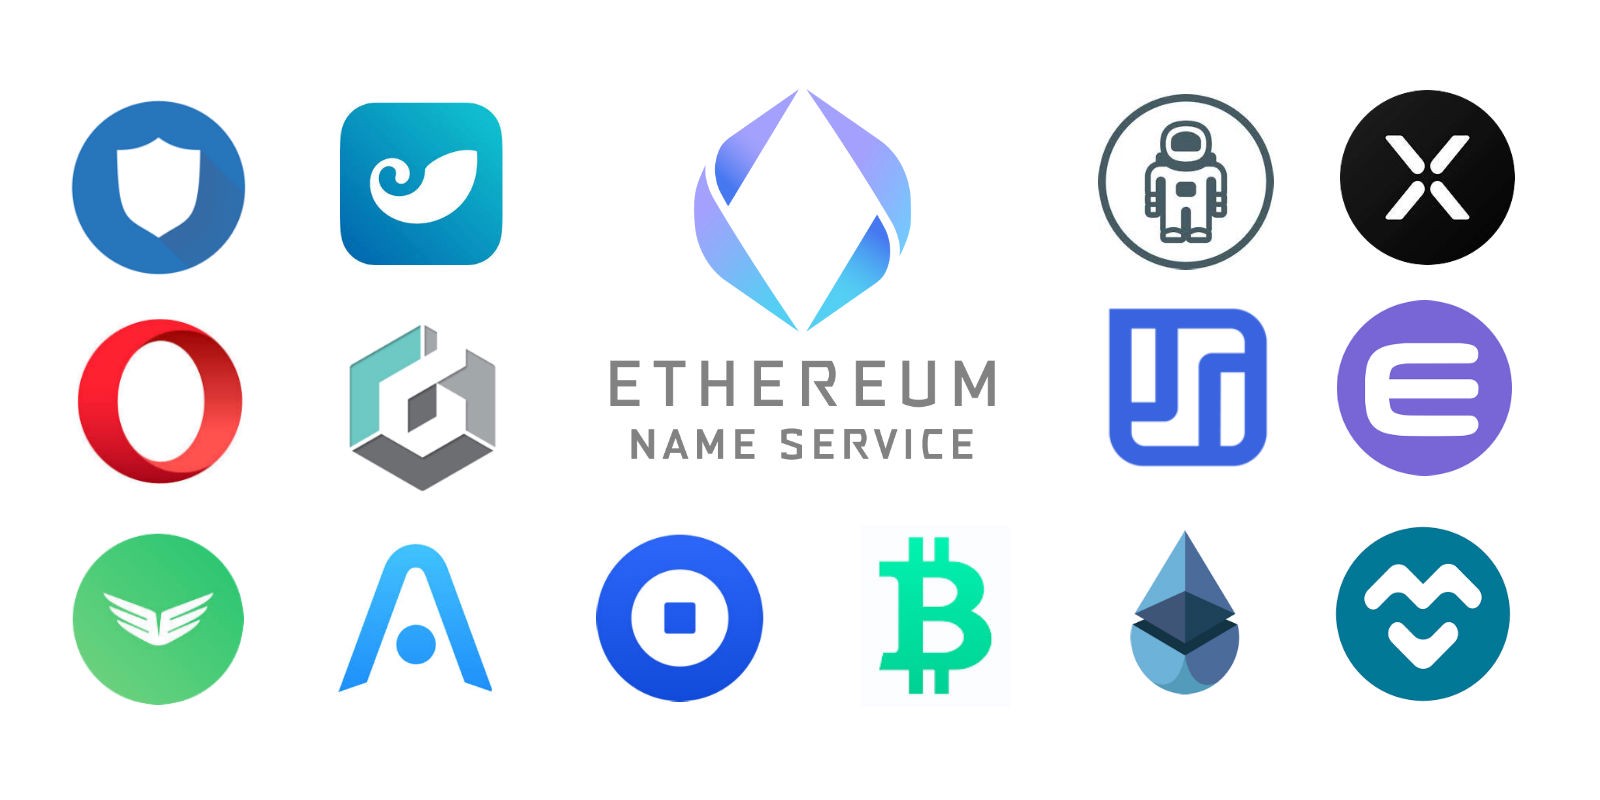 Ethereum Name Service legger til infrastruktur for støtte for flere valutaer